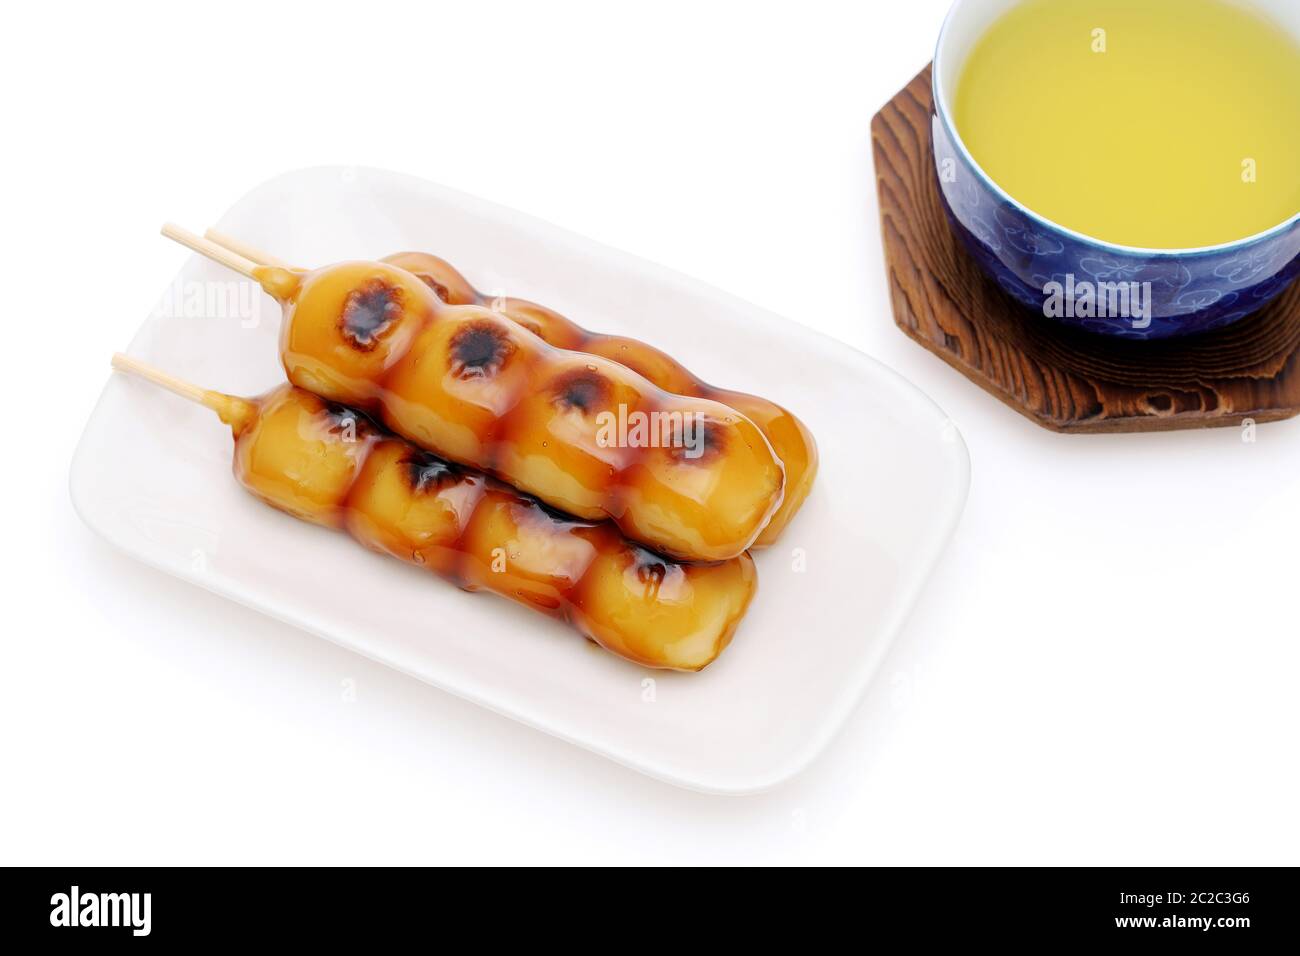 Japanese confectionery, Mitarashi dango for traditional sweet image Stock Photo